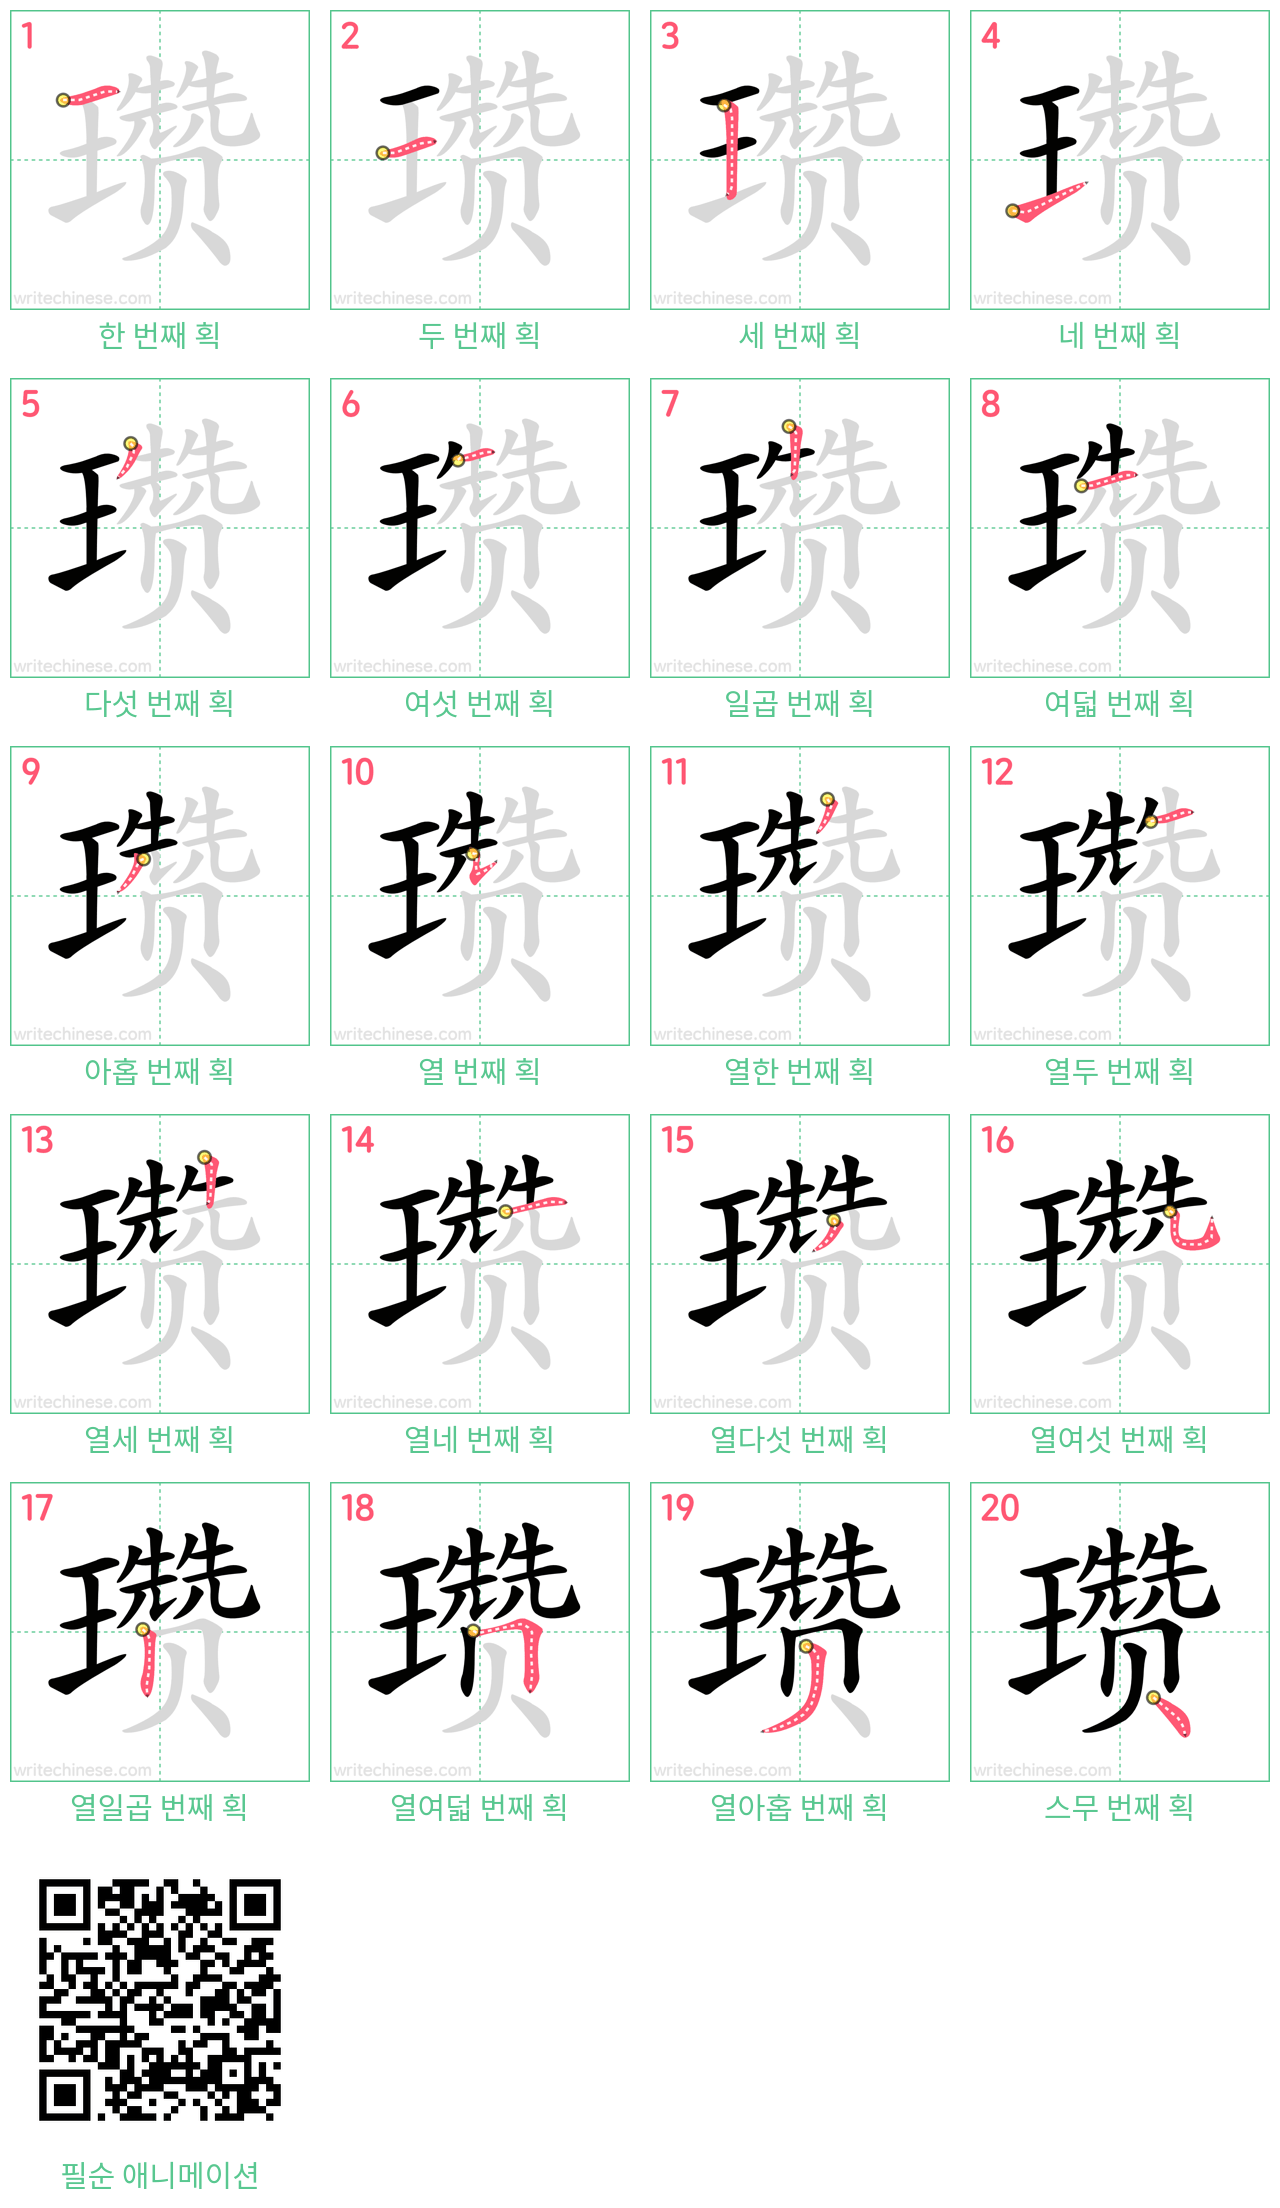 瓒 step-by-step stroke order diagrams